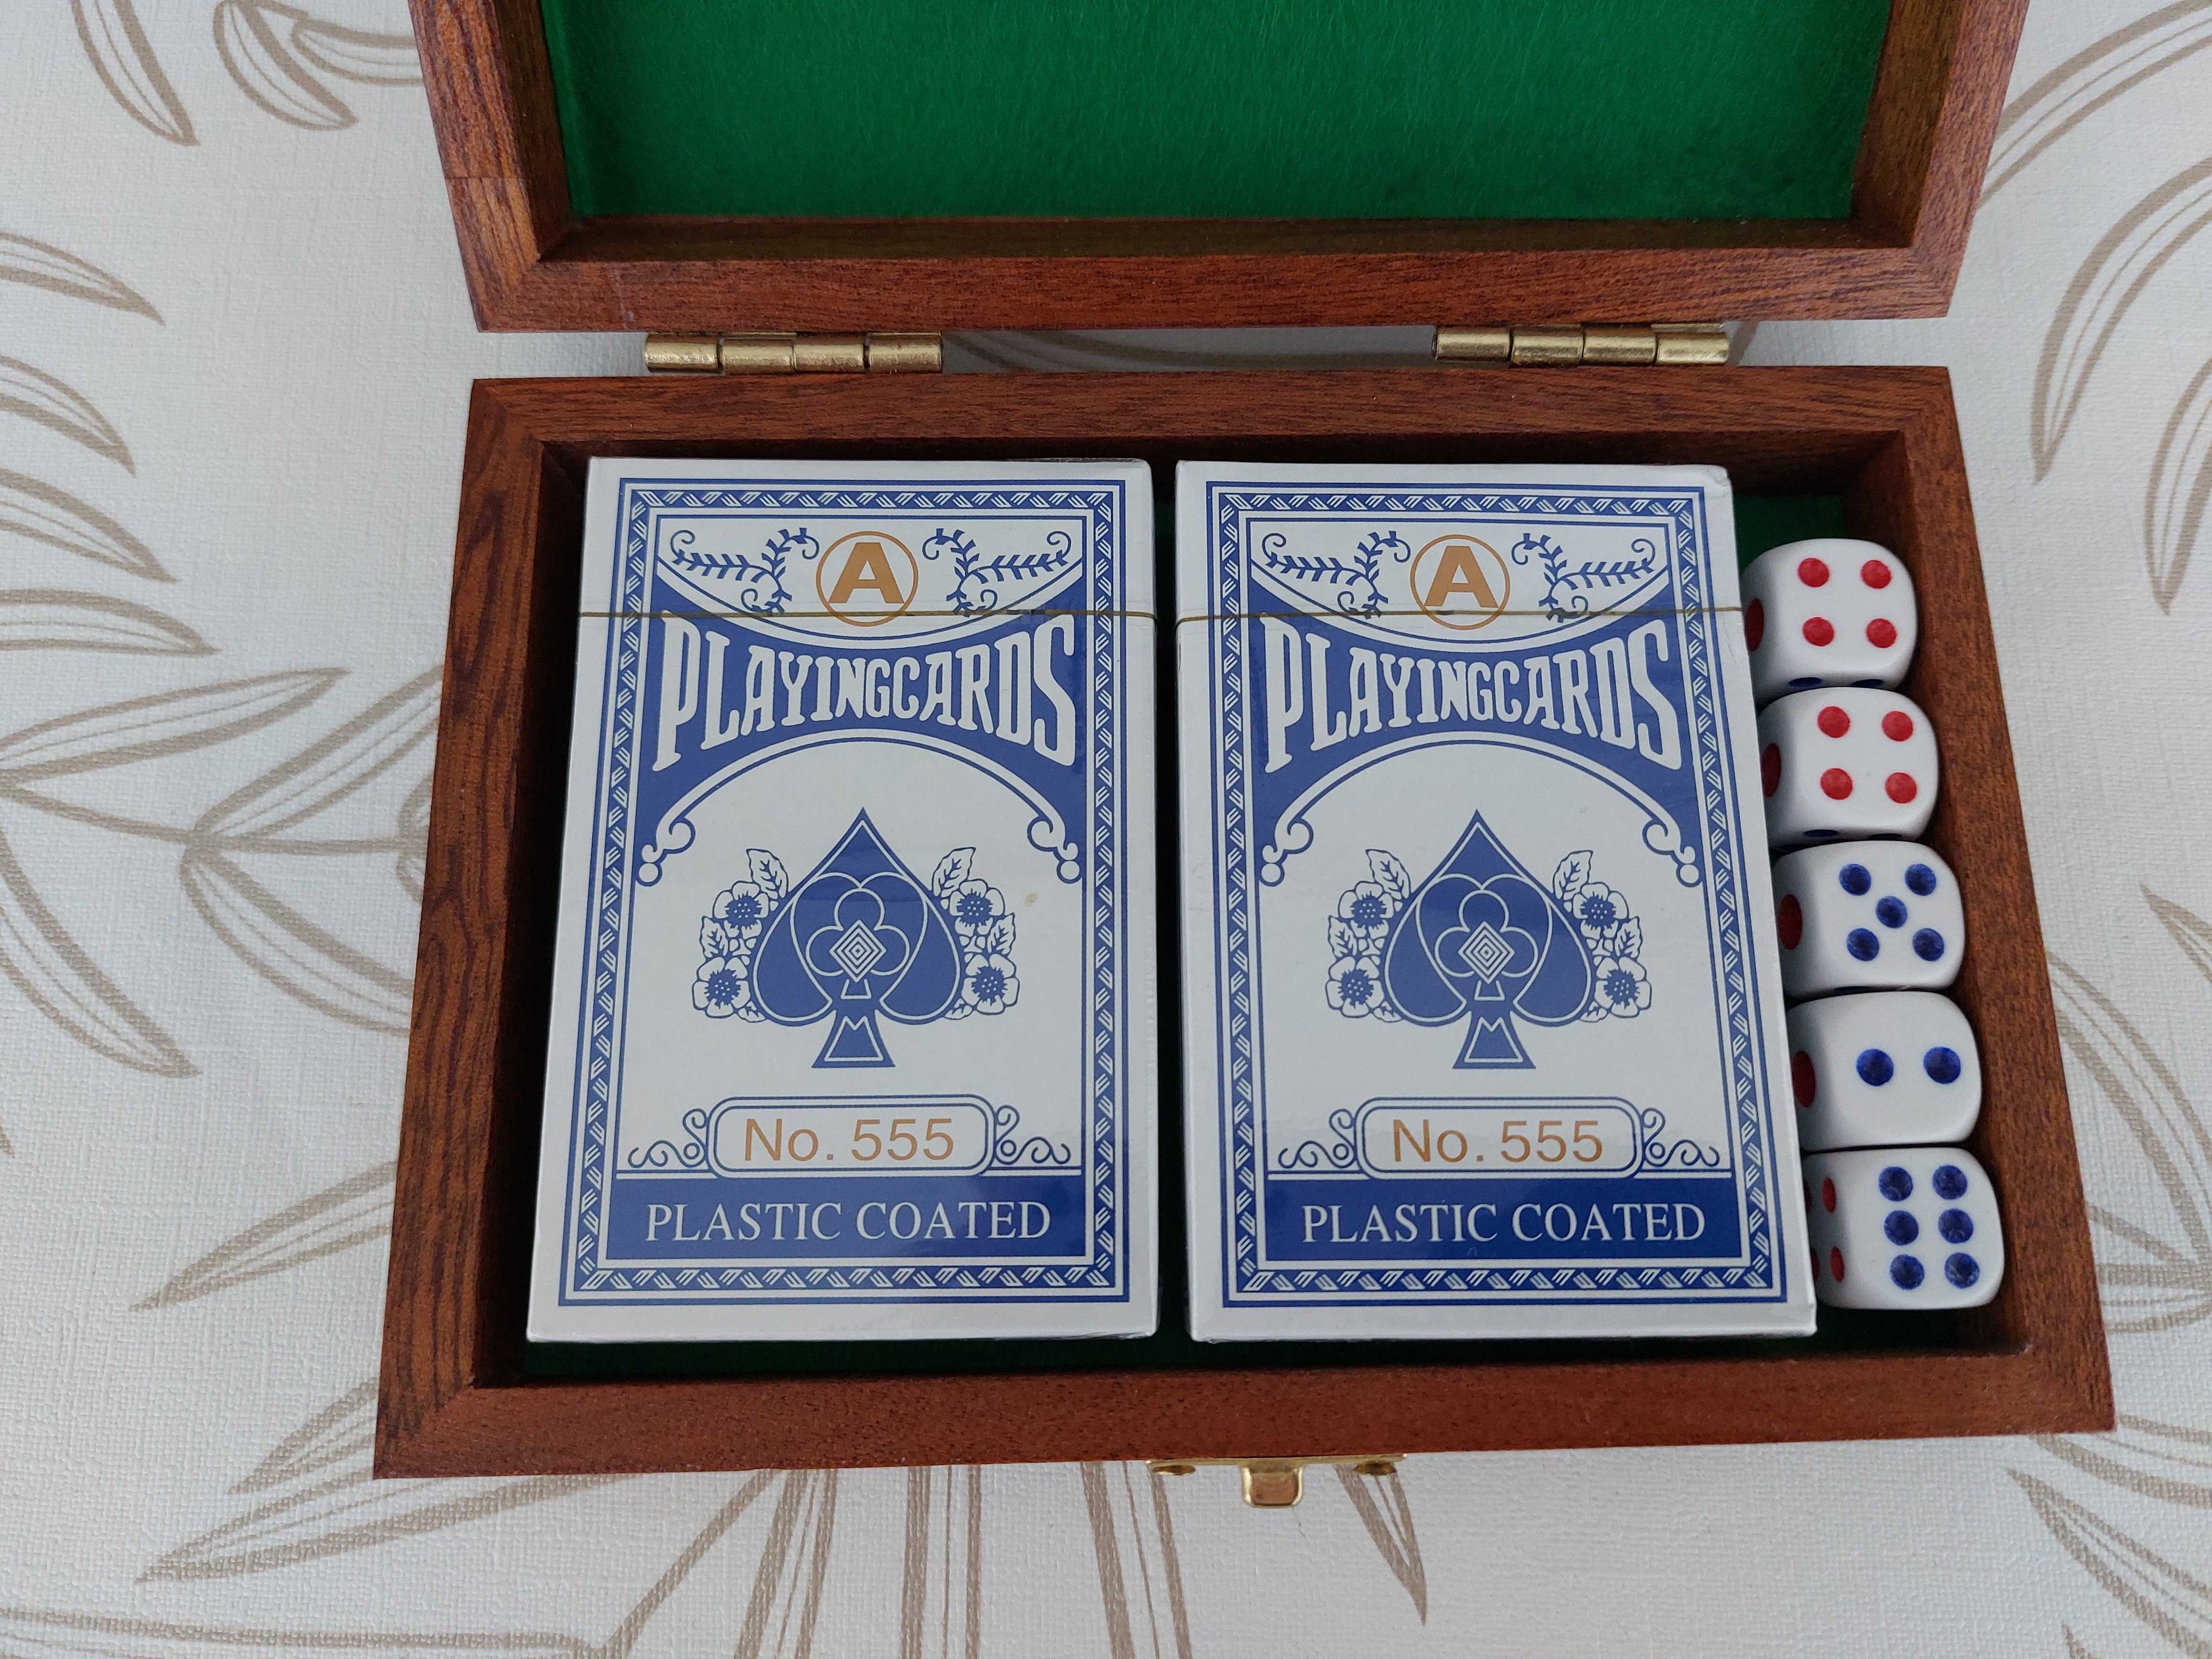 Zestaw do gry, dwie talie nieużywanych kart, 5 kości w szkatułce